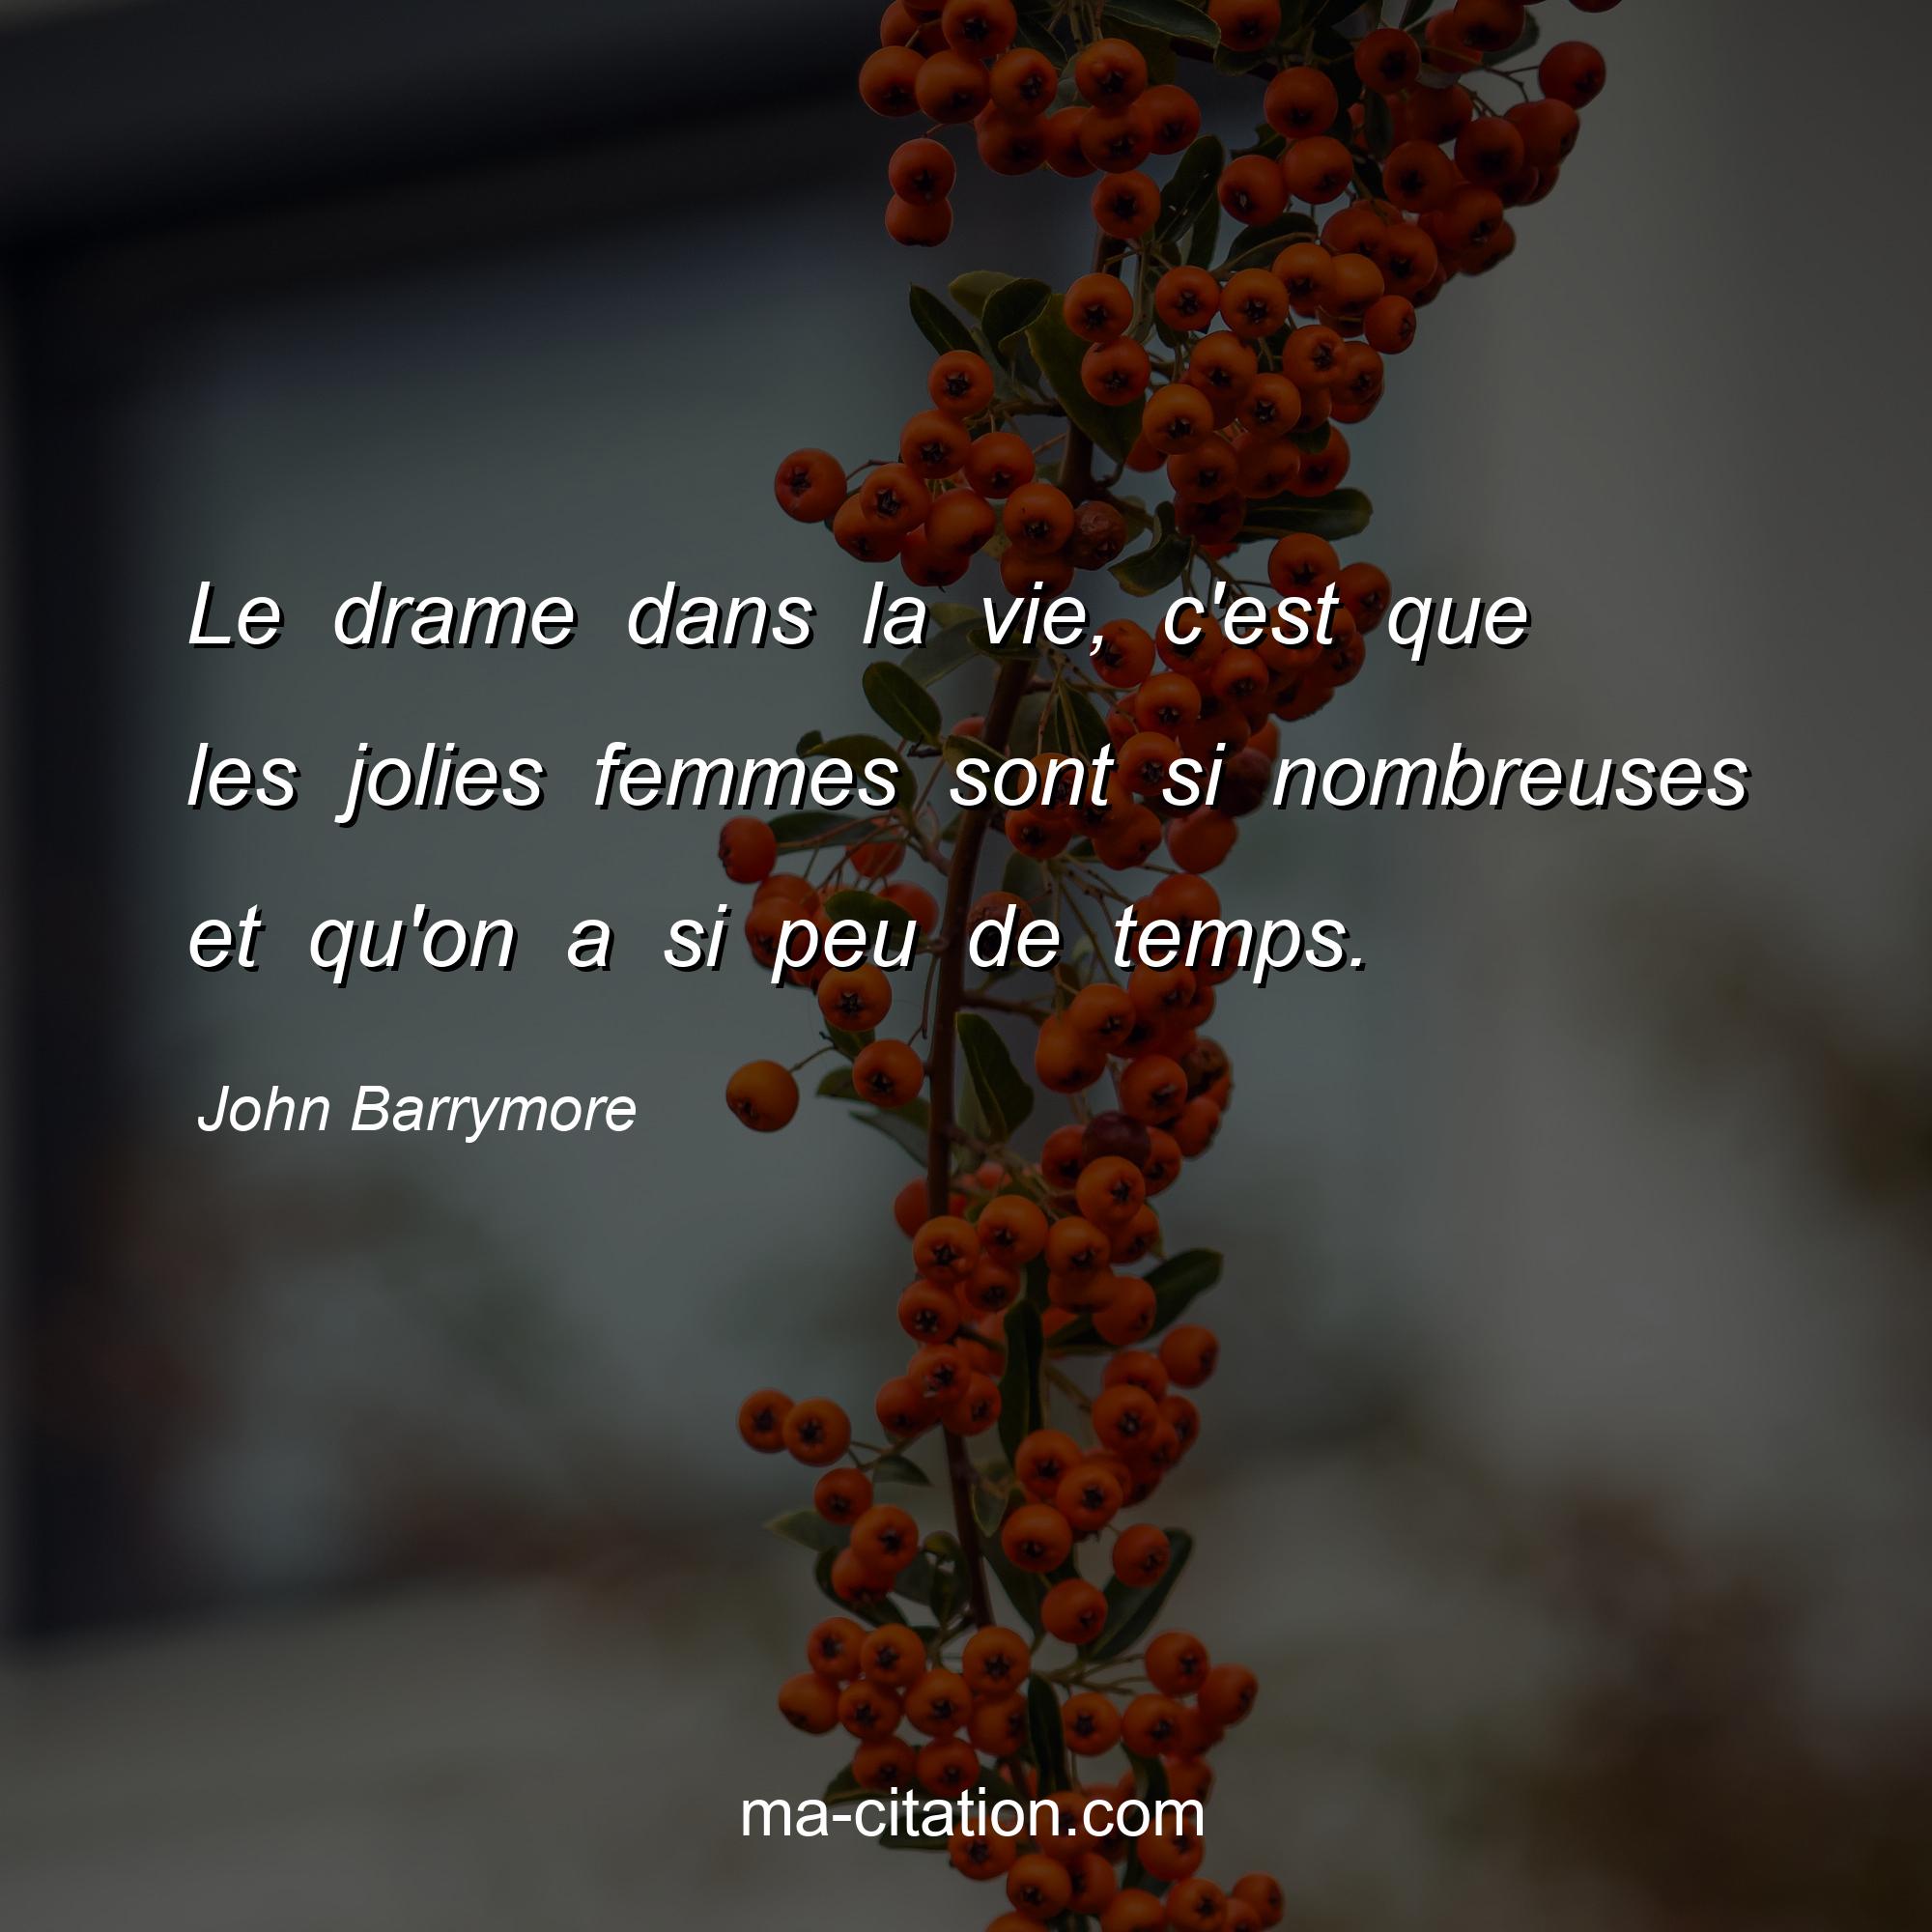 John Barrymore : Le drame dans la vie, c'est que les jolies femmes sont si nombreuses et qu'on a si peu de temps.